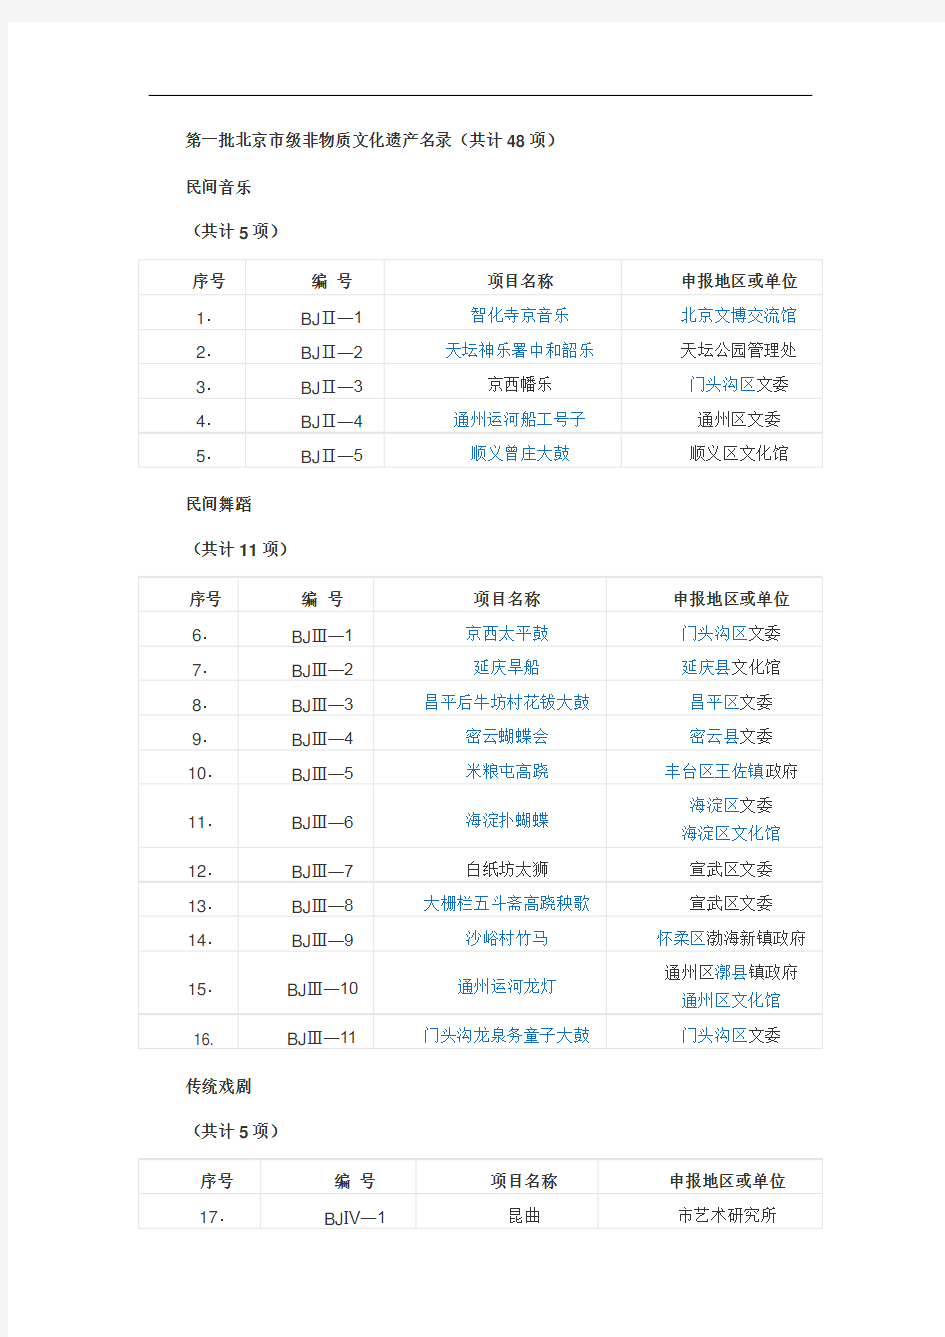 第1 2 3批北京市级非物质文化遗产名录